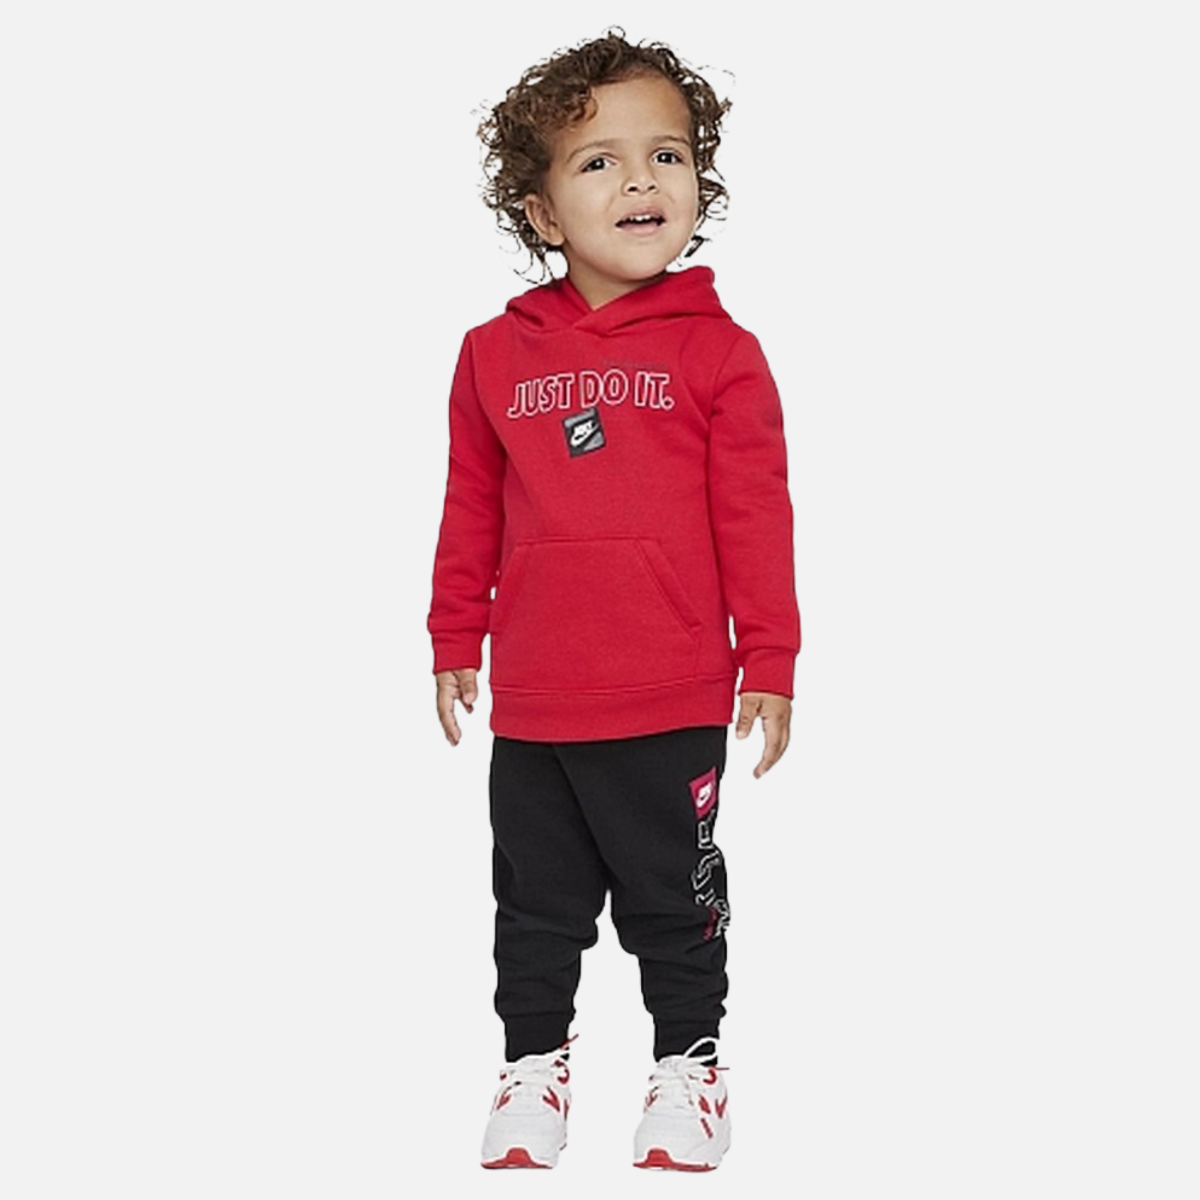 Completo tuta Nike Baby Just do It - rosso/nero